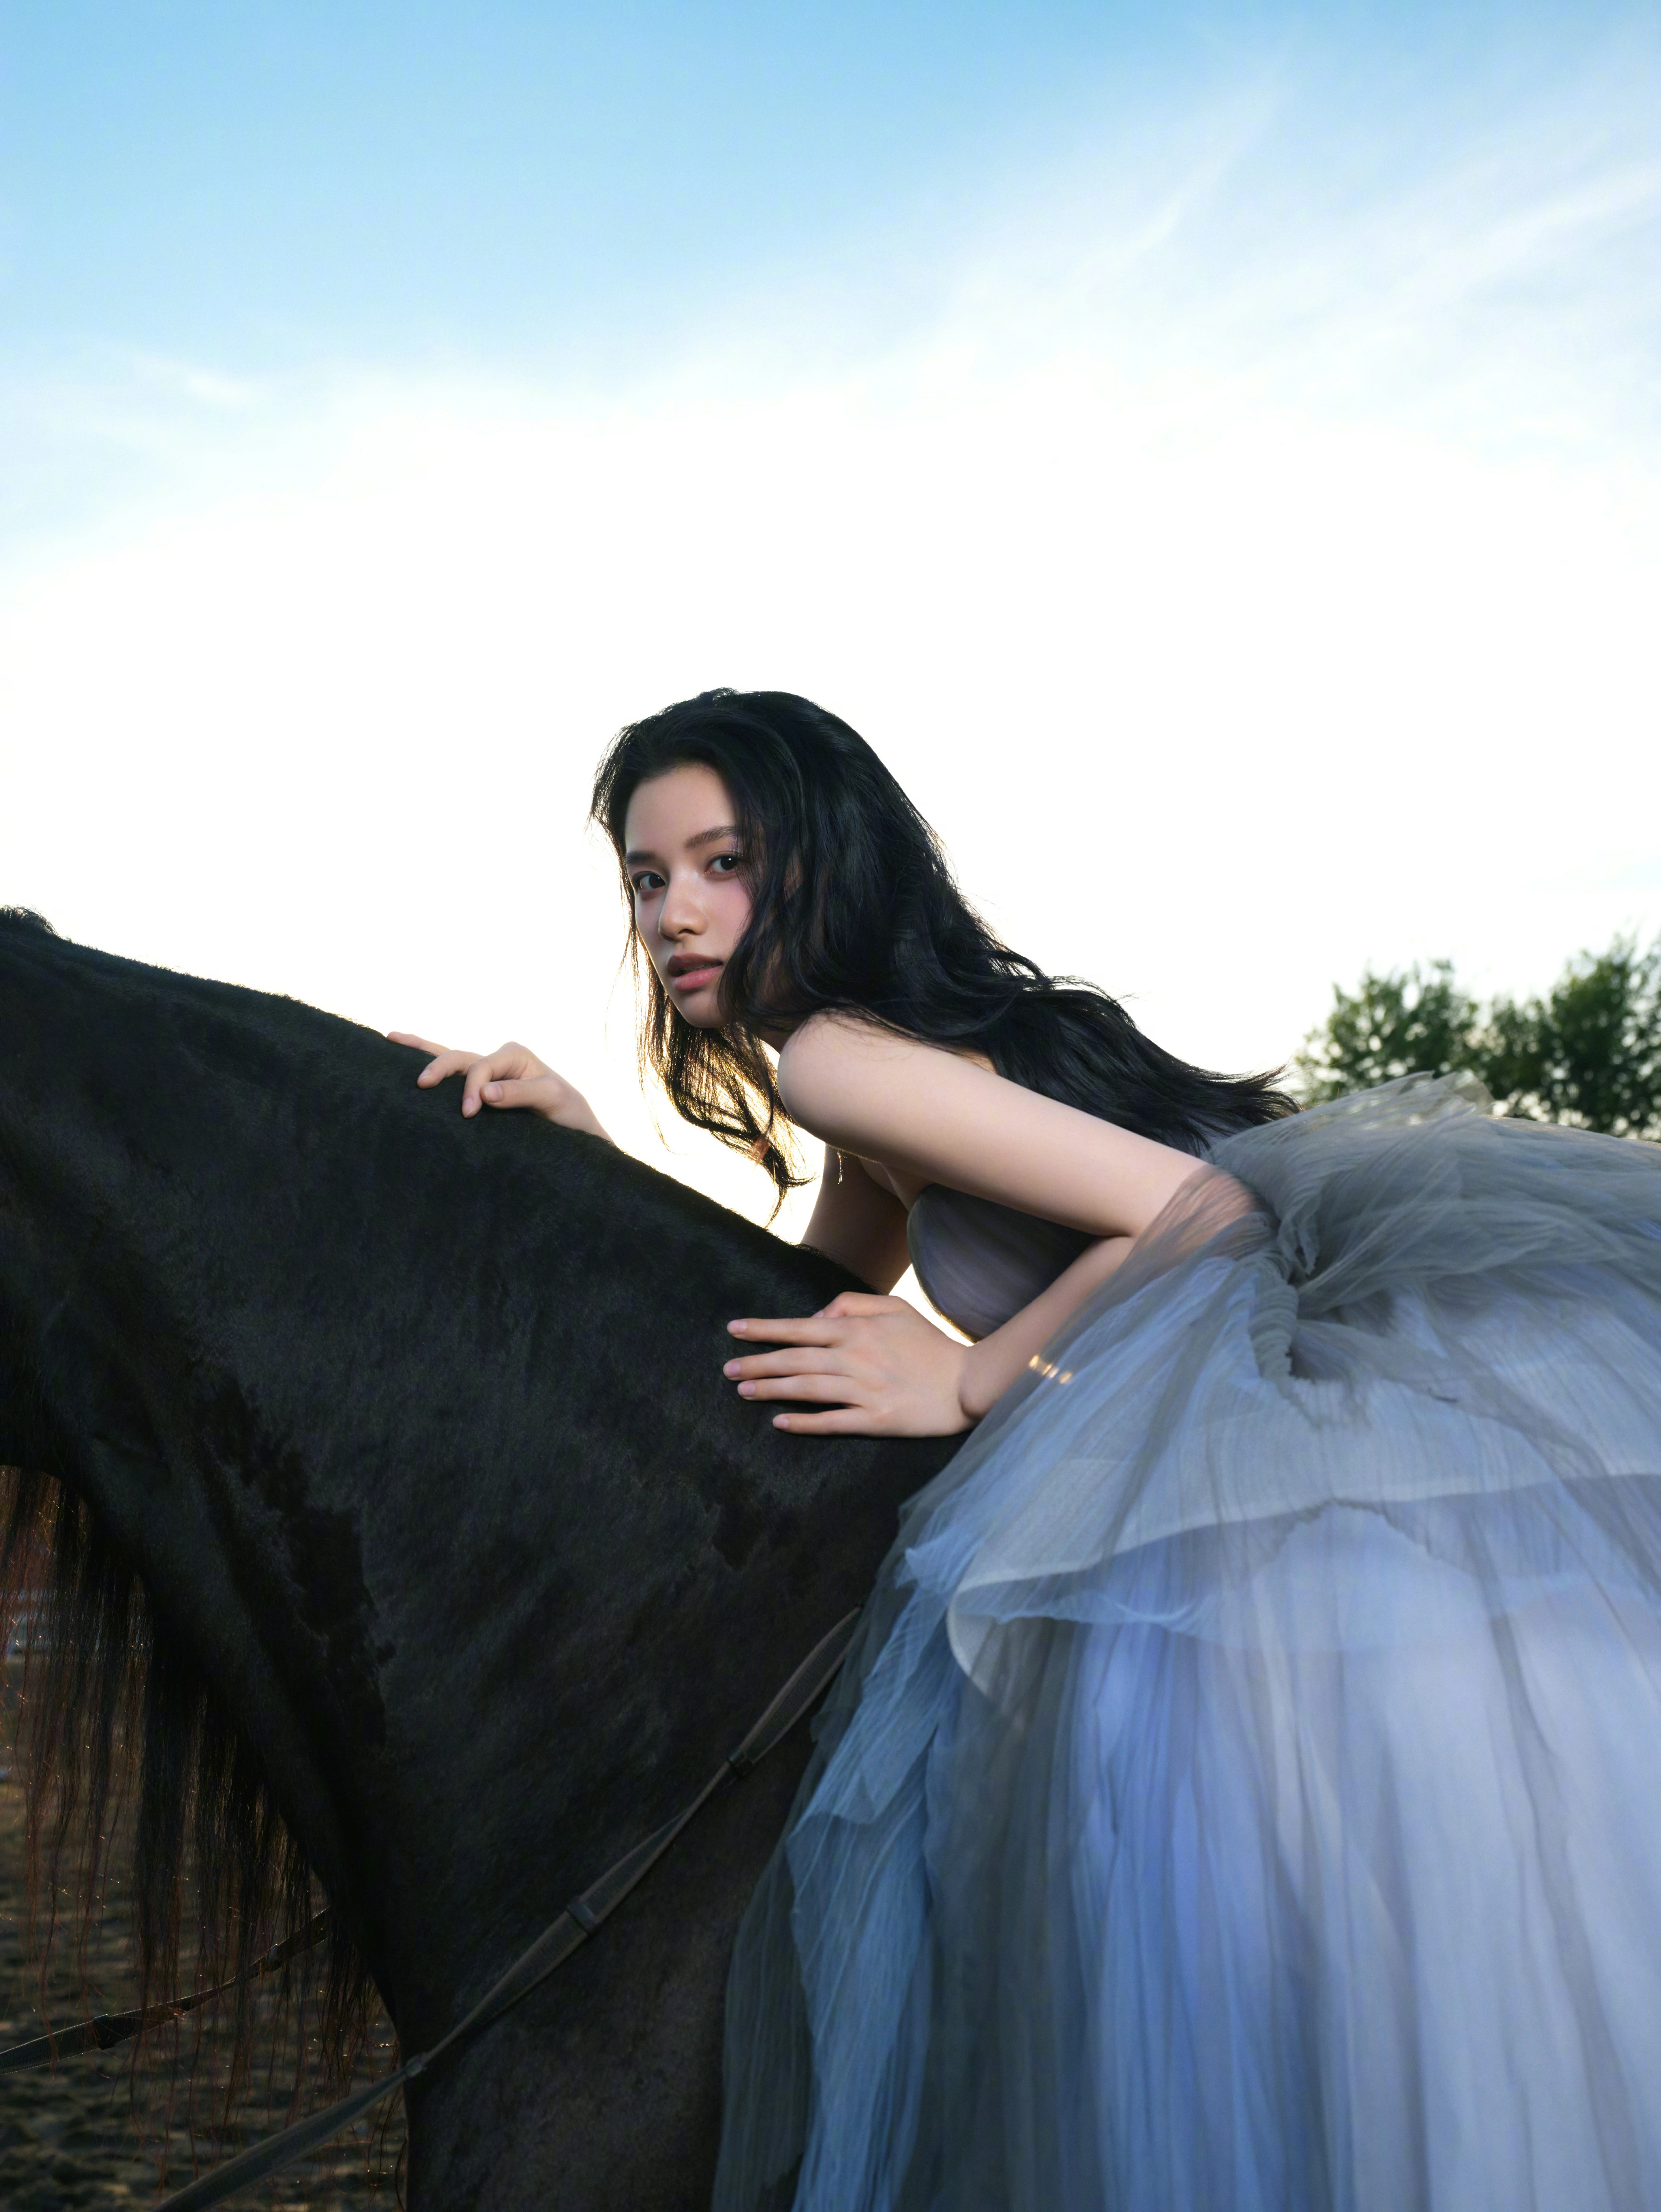 张婧仪穿蓝色公主裙显高贵气质 骑马姿势优雅侧颜迷人,7